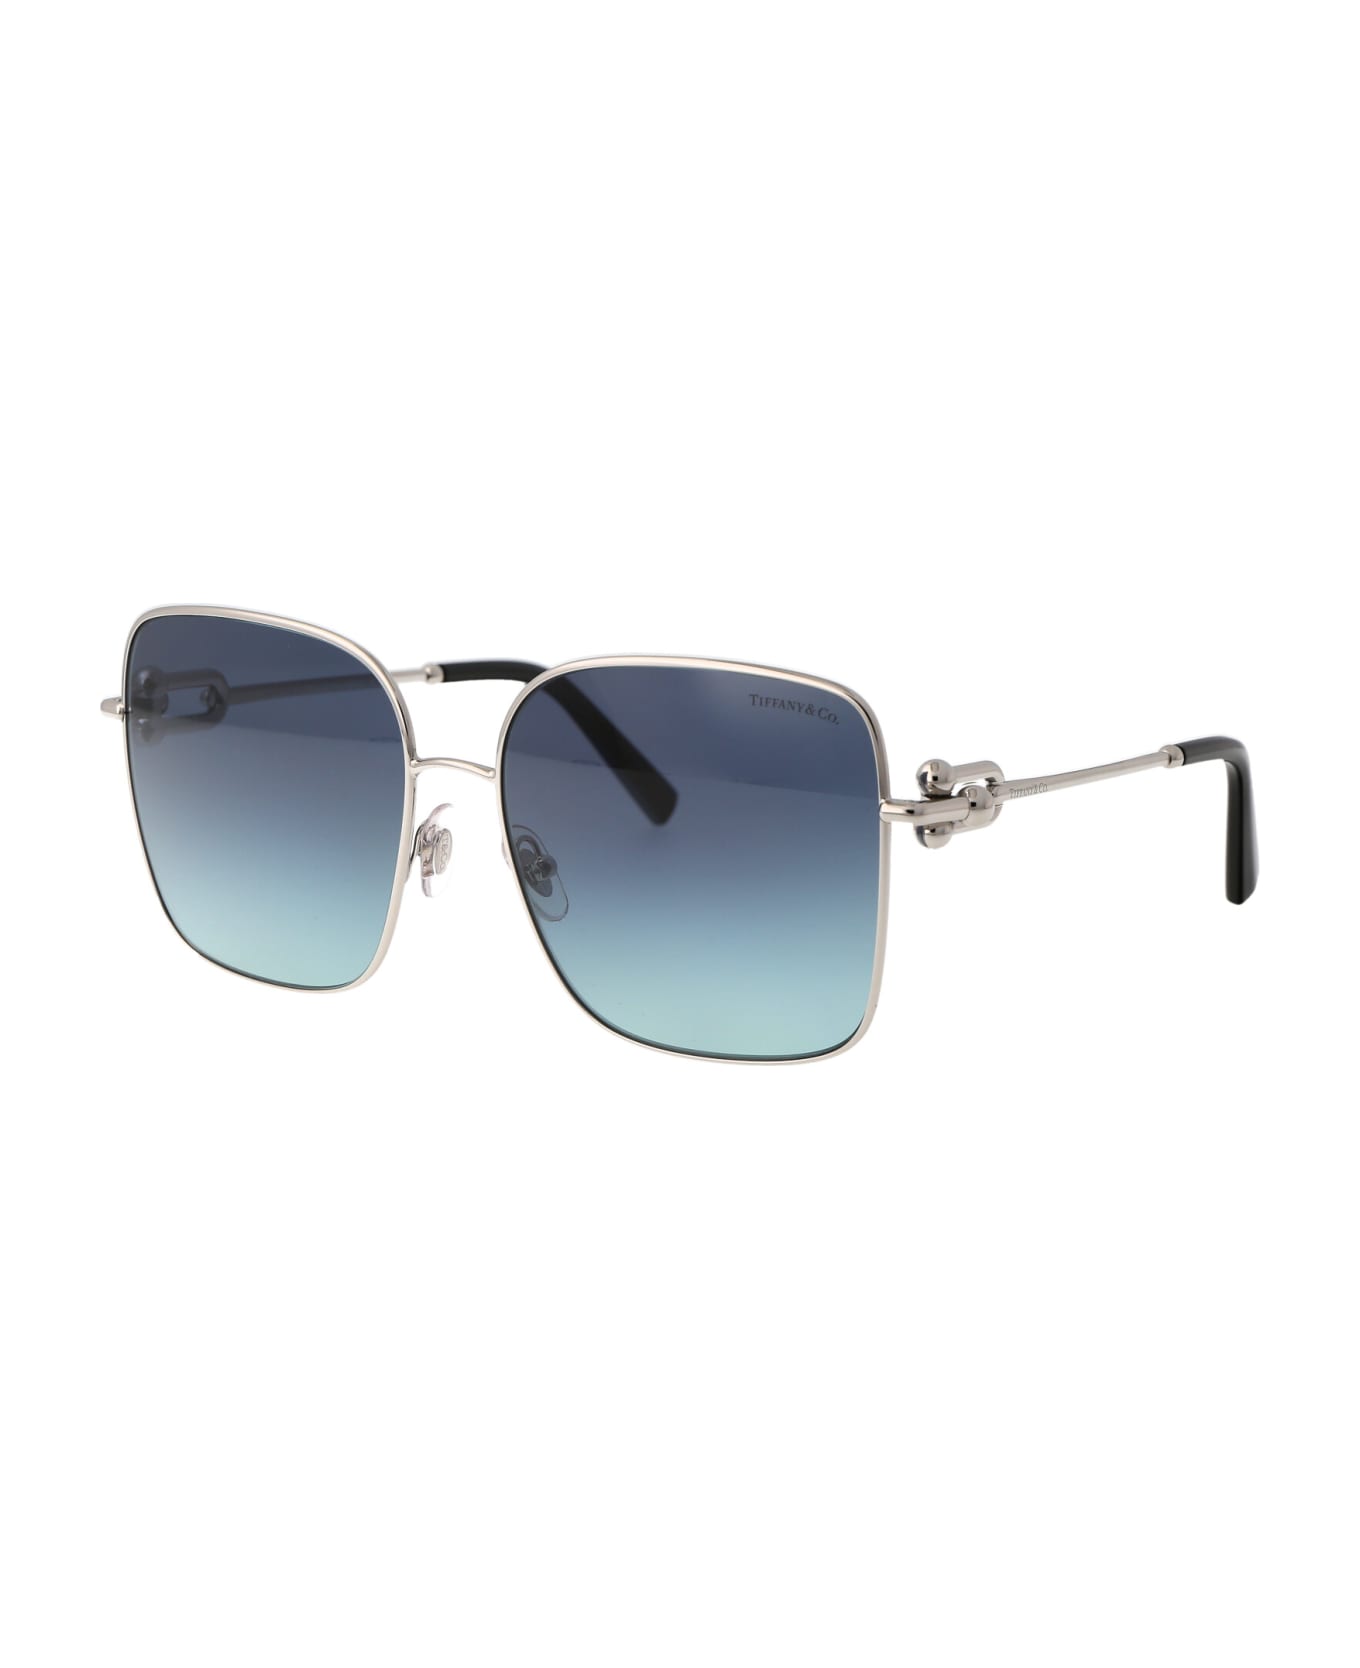 Tiffany & Co. 0tf3094 Sunglasses - 60019S Silver